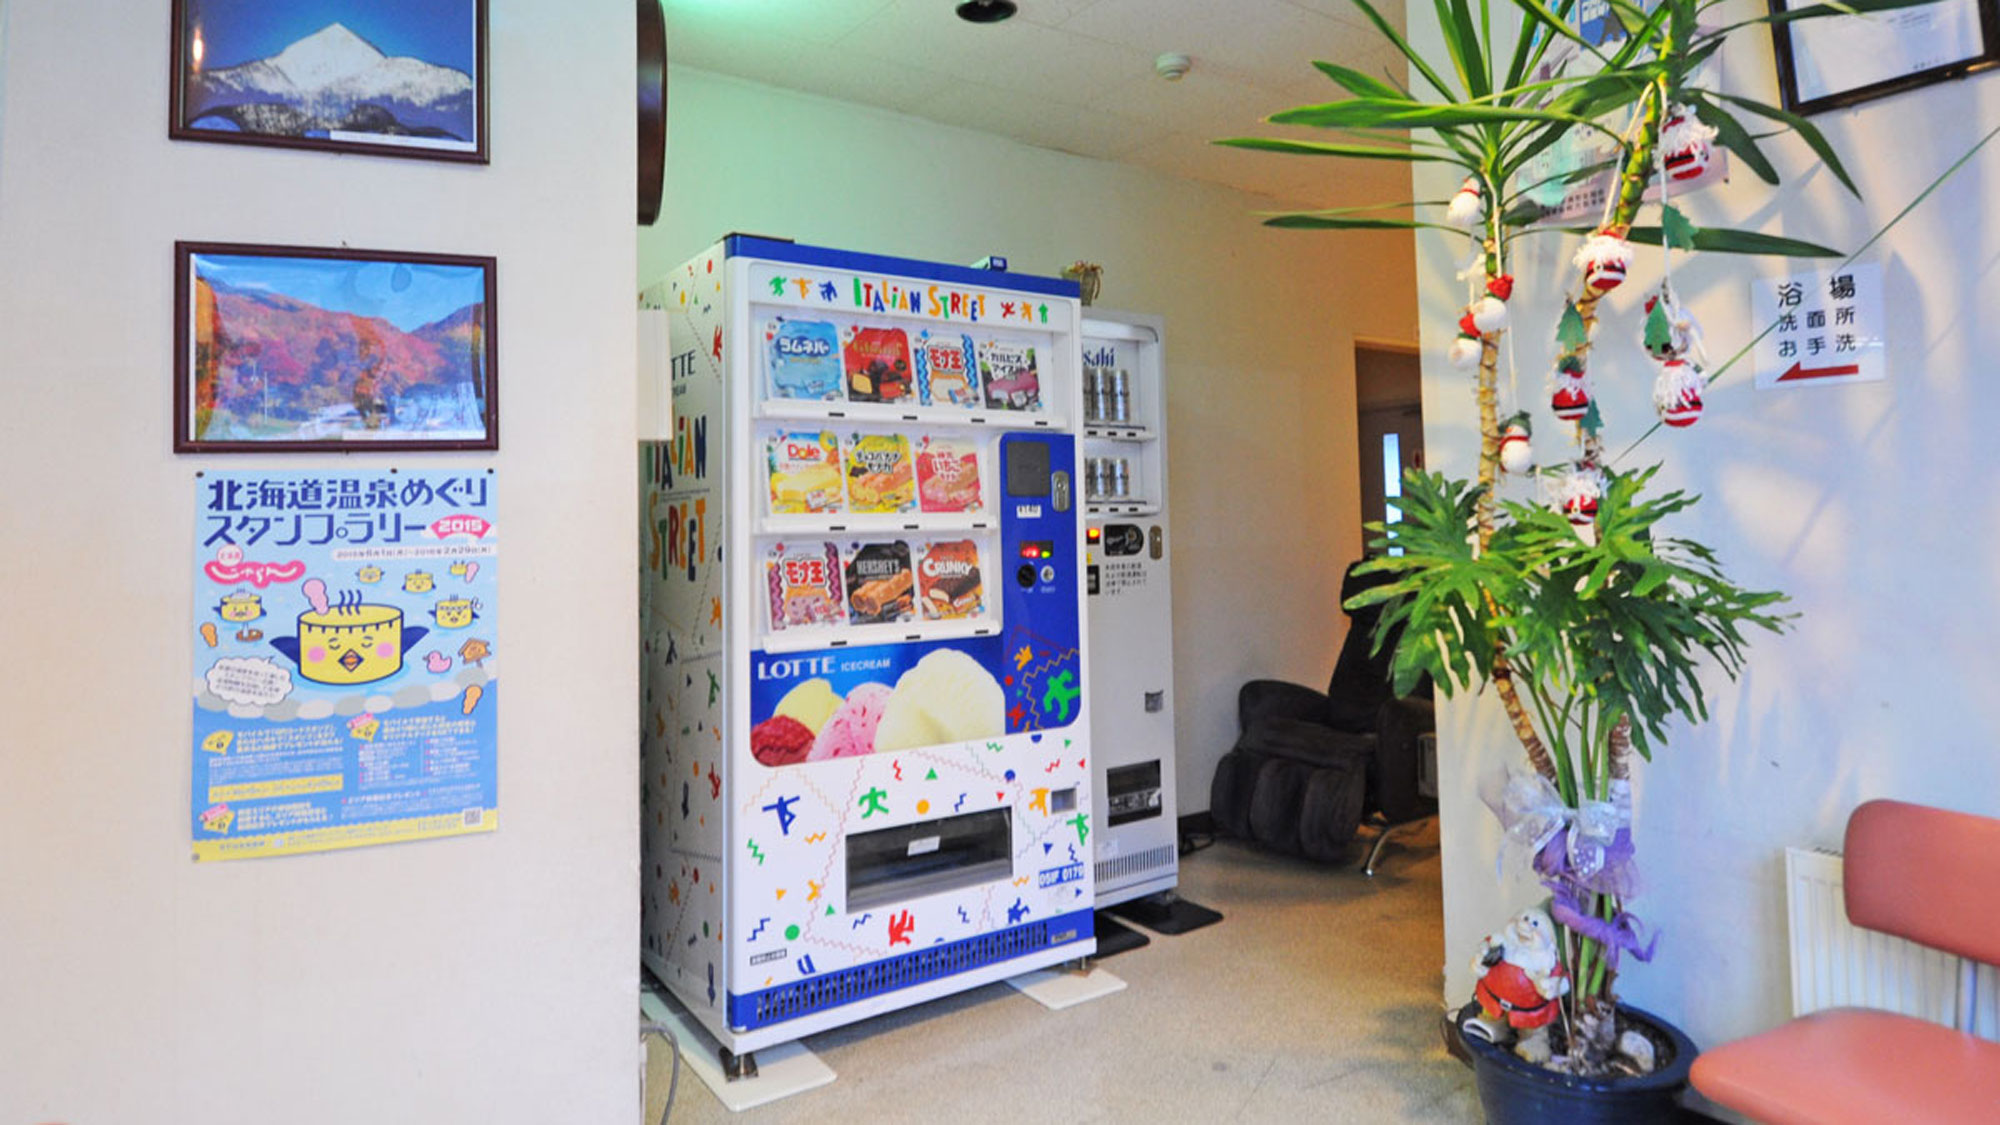 【館内】こちらはアイス・お酒の自動販売機を設置しております。